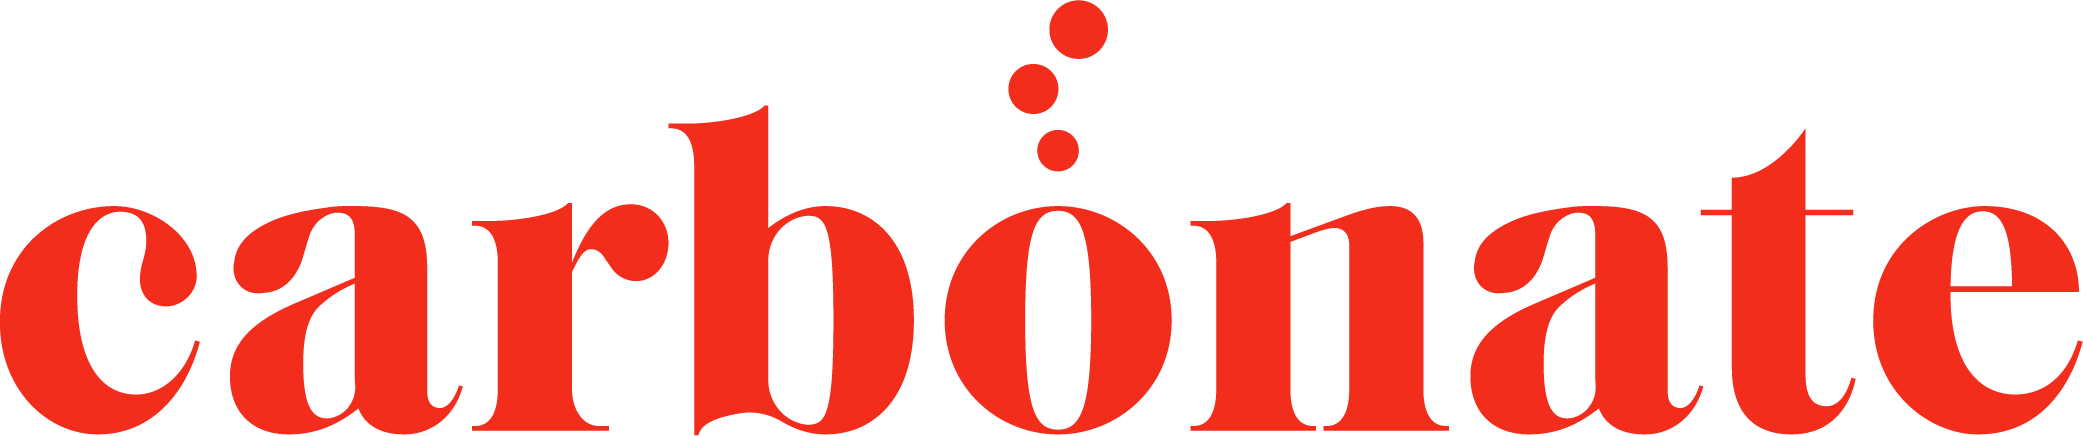 Carbonate logo